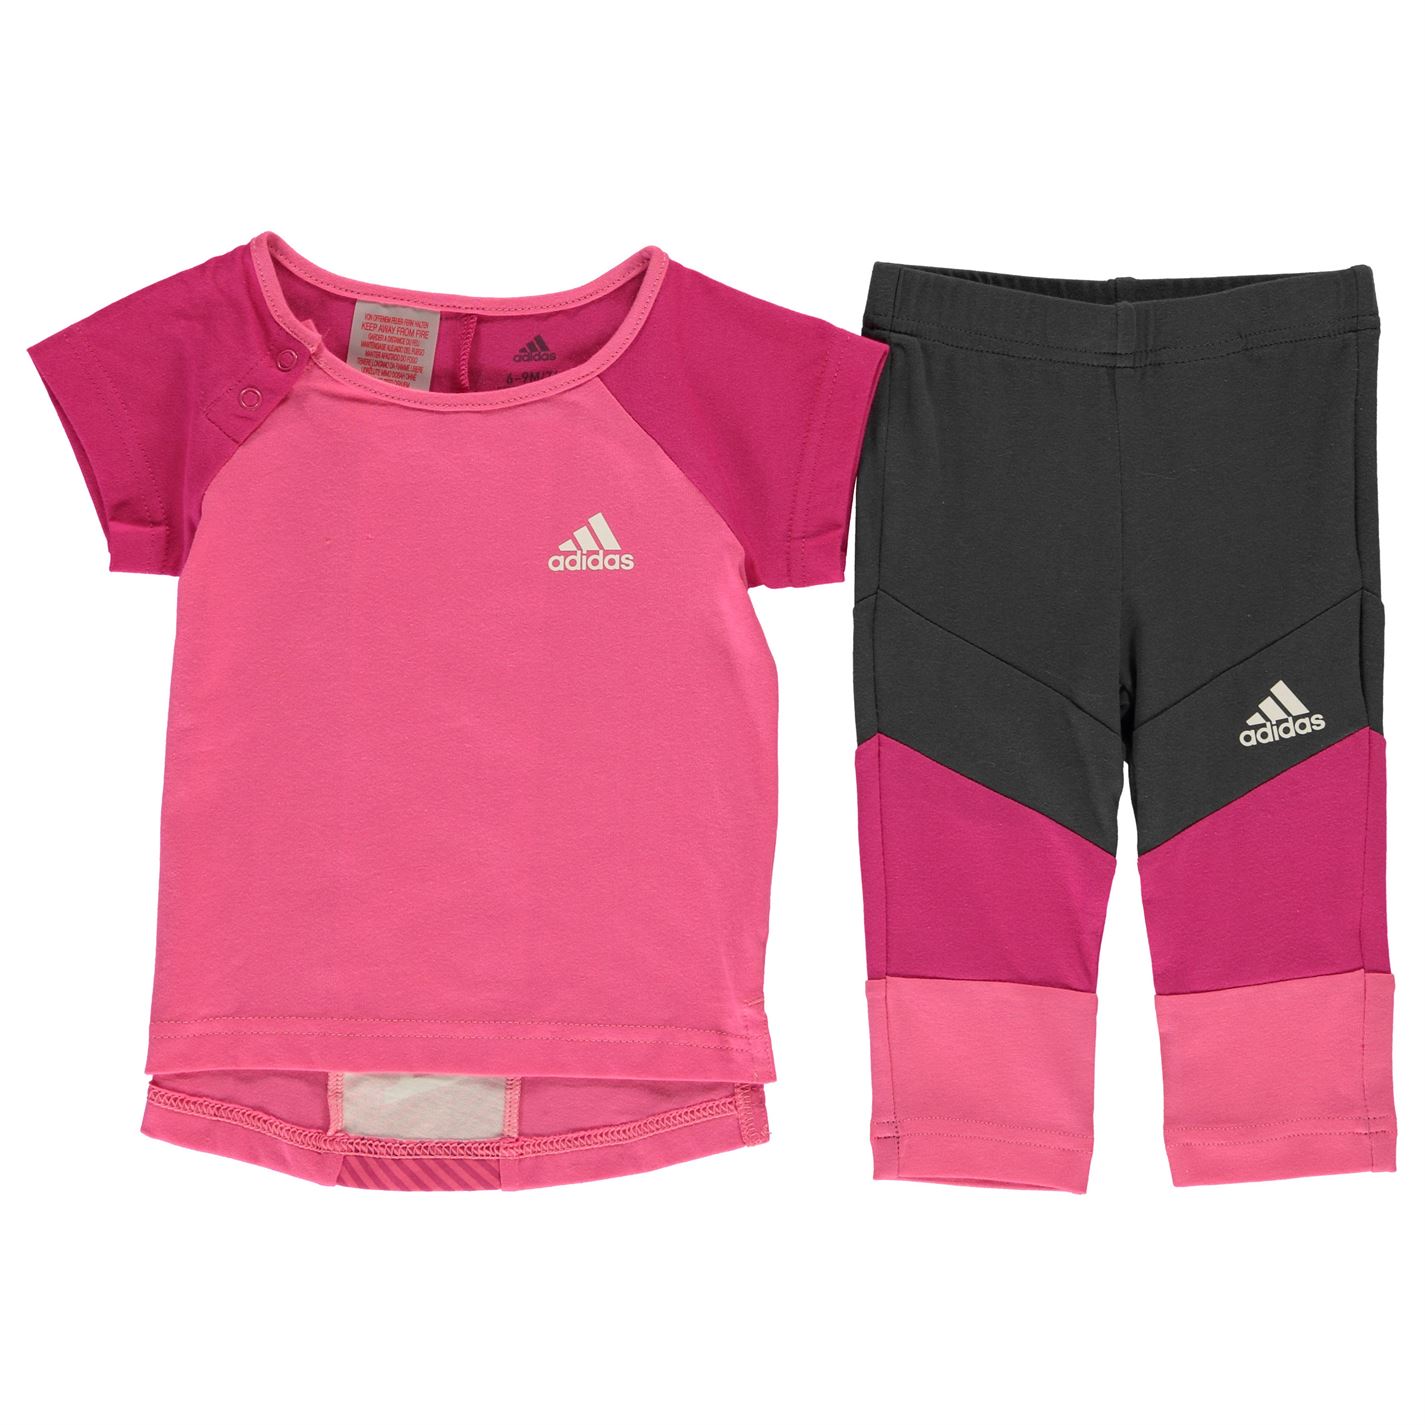 Adidas Baby Girls T-Shirt & Leggings Set